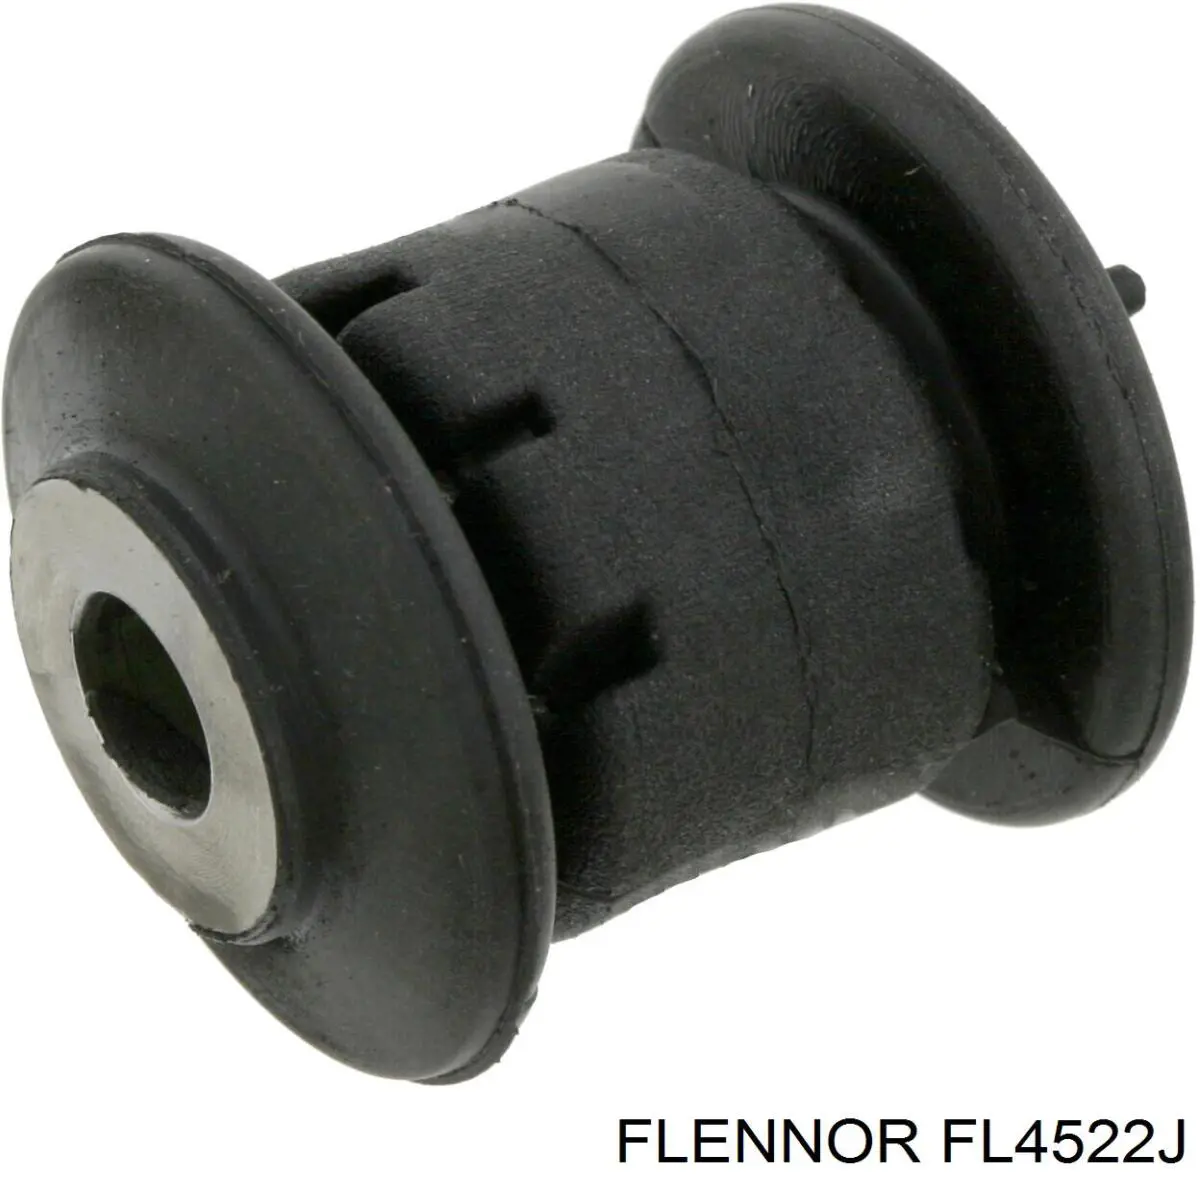 FL4522J Flennor silentblock de suspensión delantero inferior